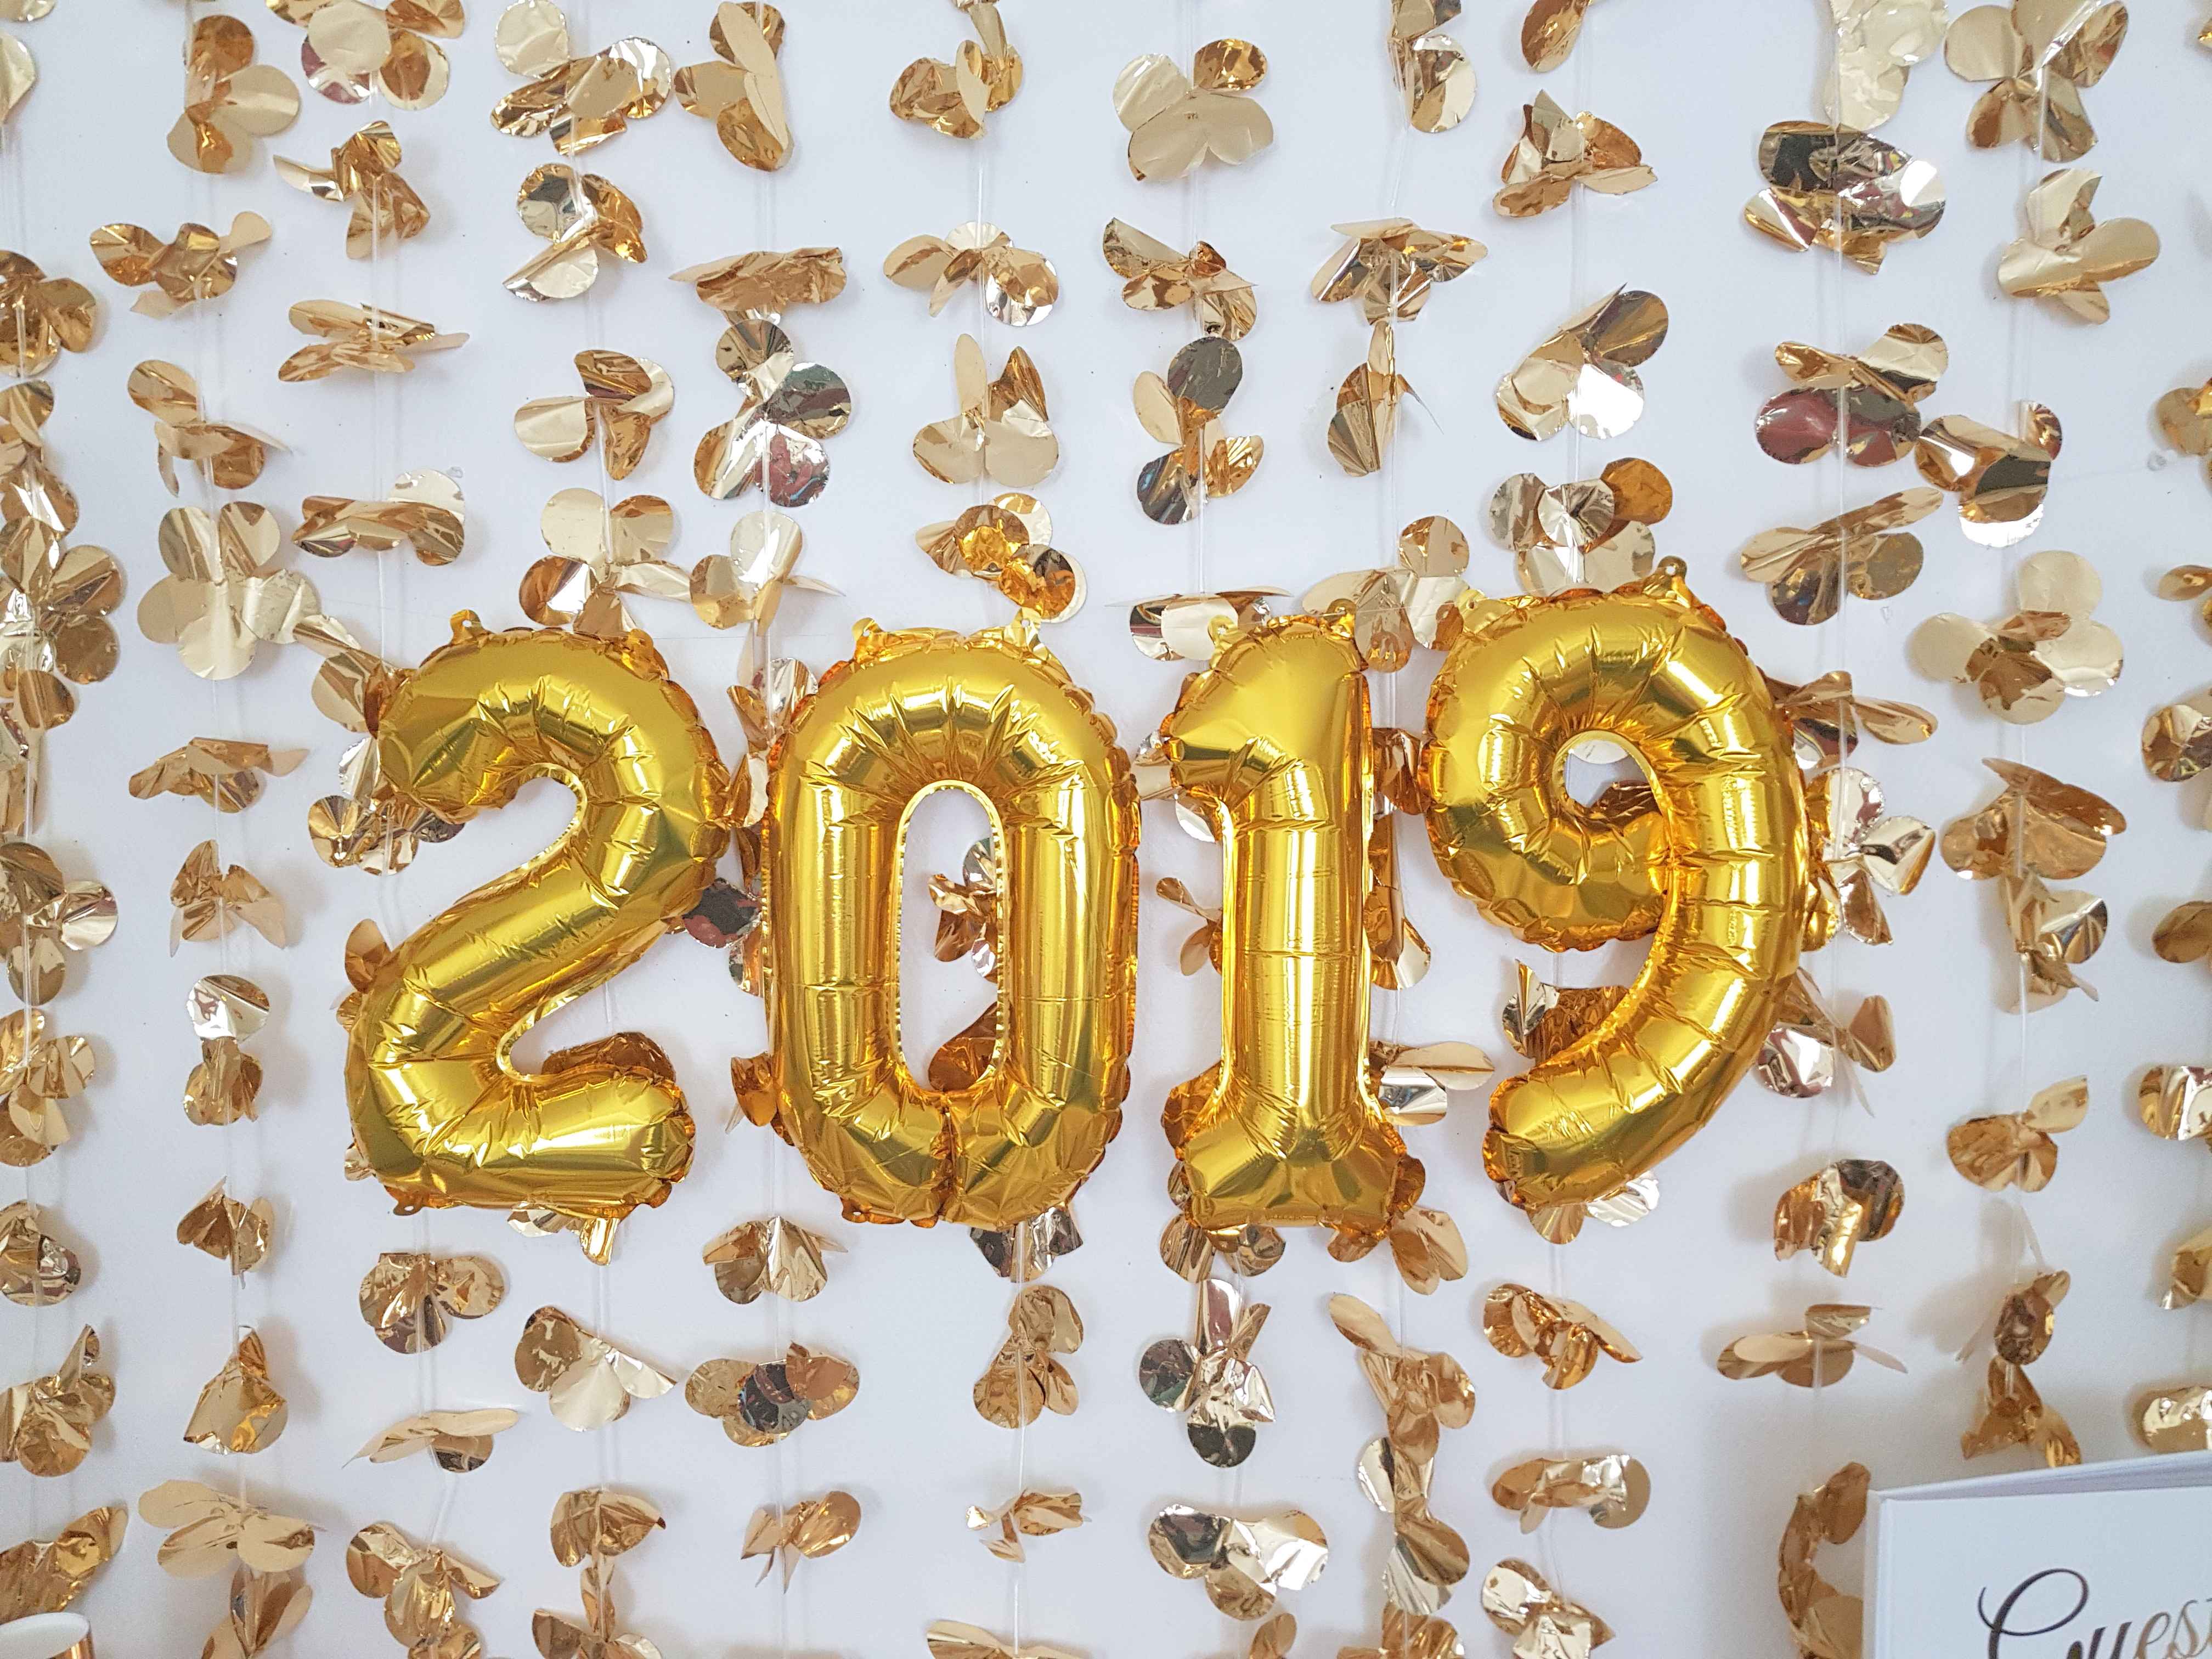 sweet table d'inspiration pour le nouvel an 2019 jour